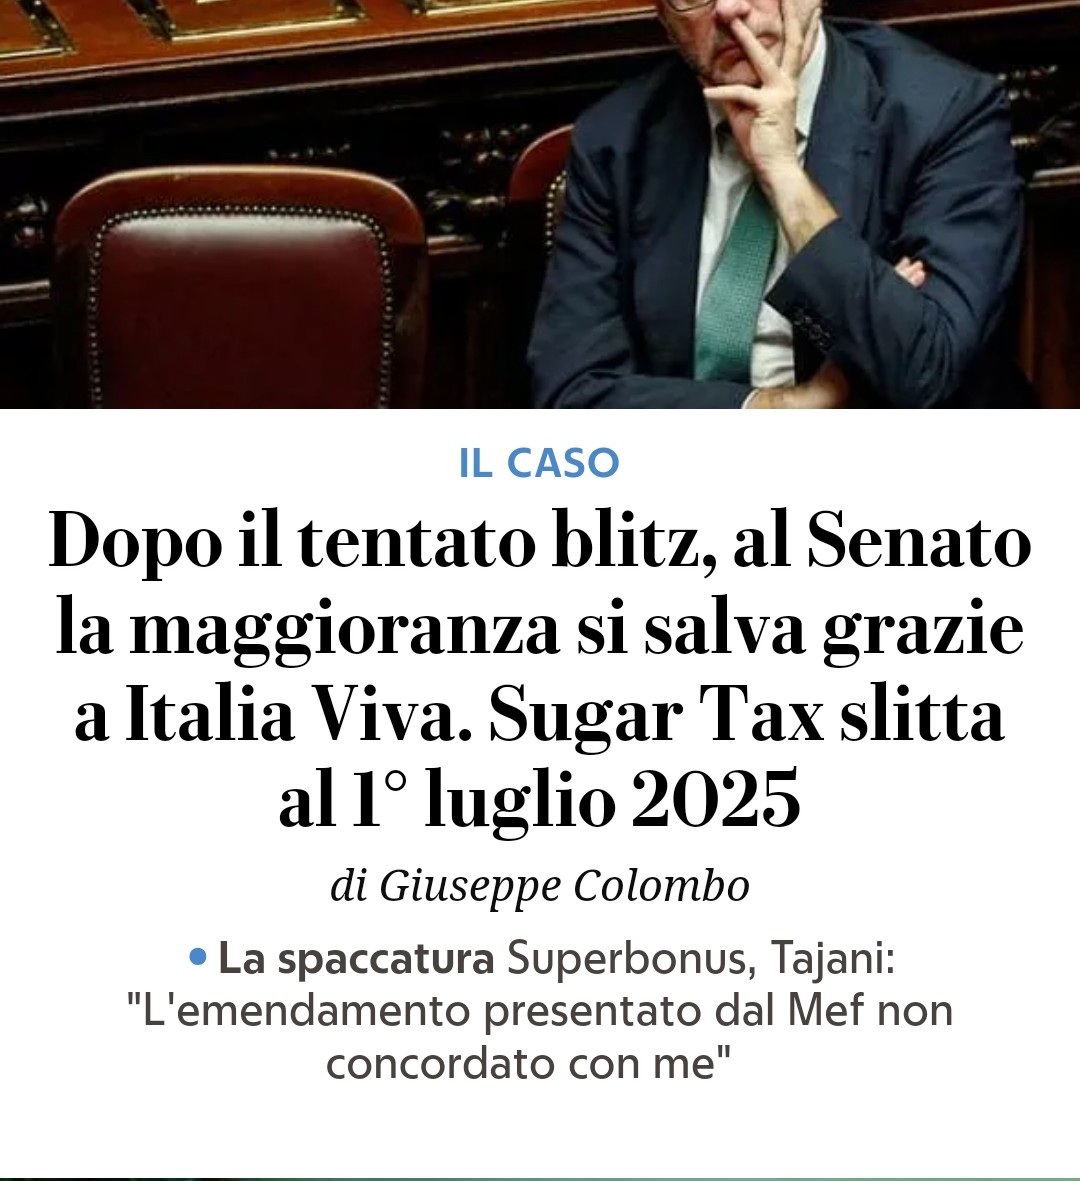 Quando andrete a votare ricordatevi che Renzi e ItaliaMorta fanno parte della maggioranza di Governo.